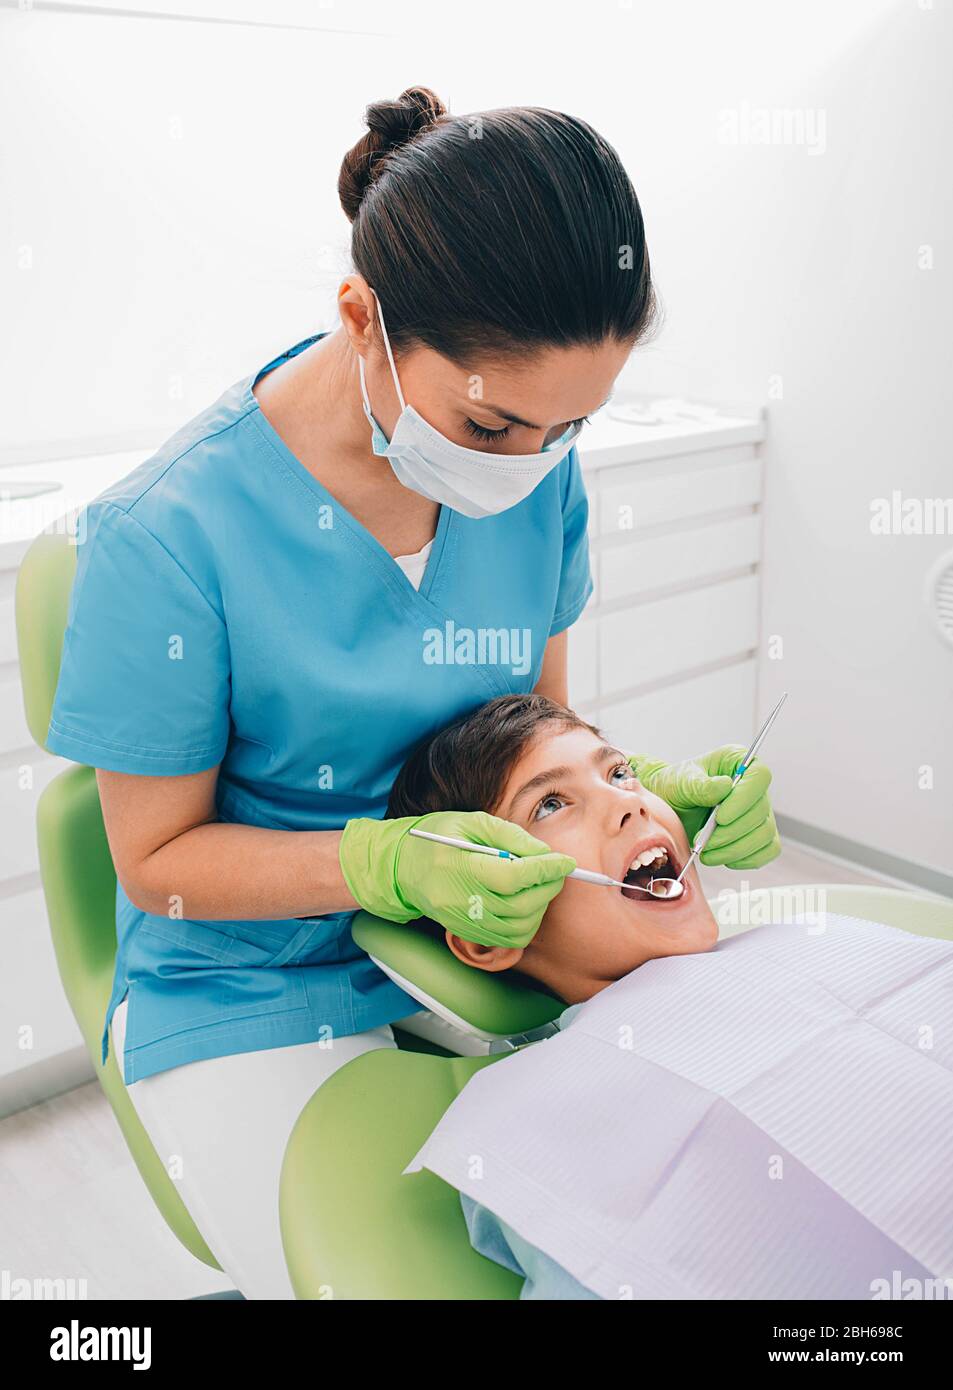 Zahnarzt tun Zahnzahnuntersuchung zu einem kleinen Jungen in der medizinischen Praxis Stockfoto